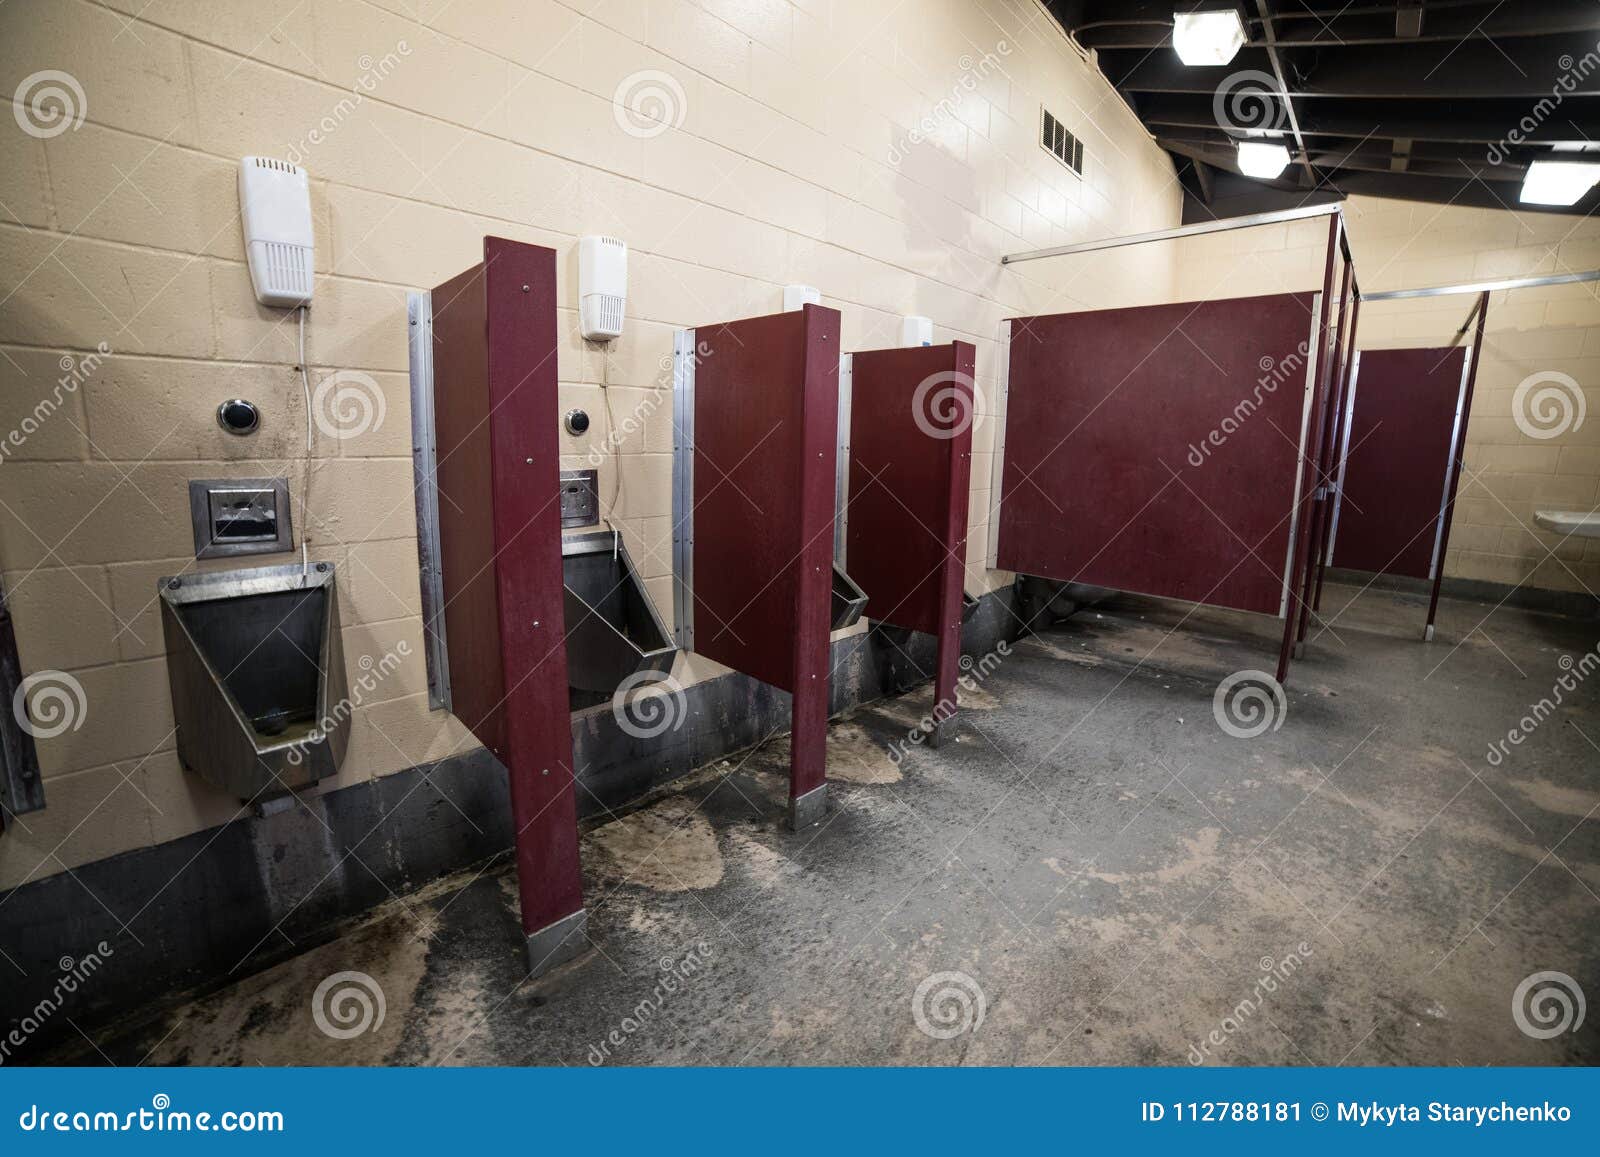 Regular Public Restroom For Men Stock Image Image Of Public Closet